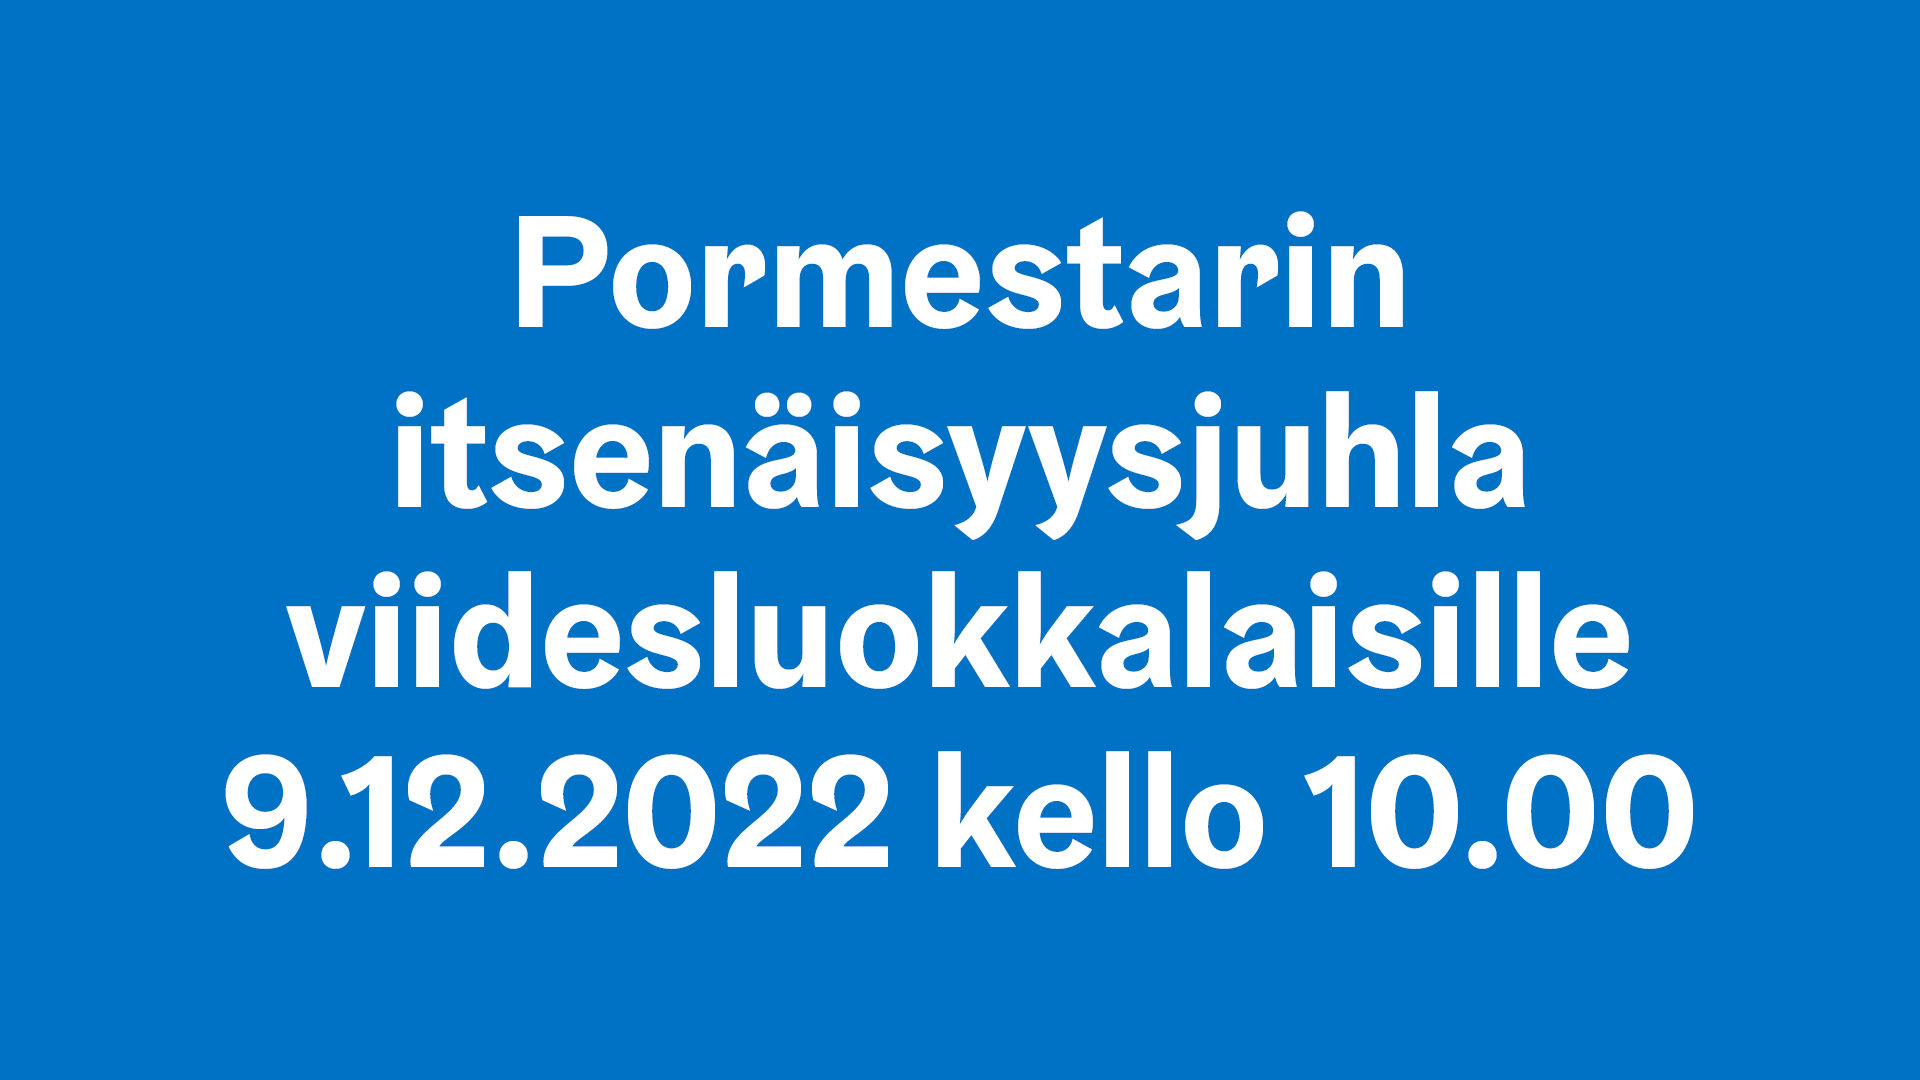 Pormestarin itsenäisyysjuhla viidesluokkalaisille 9.12.2022 kello 10.00